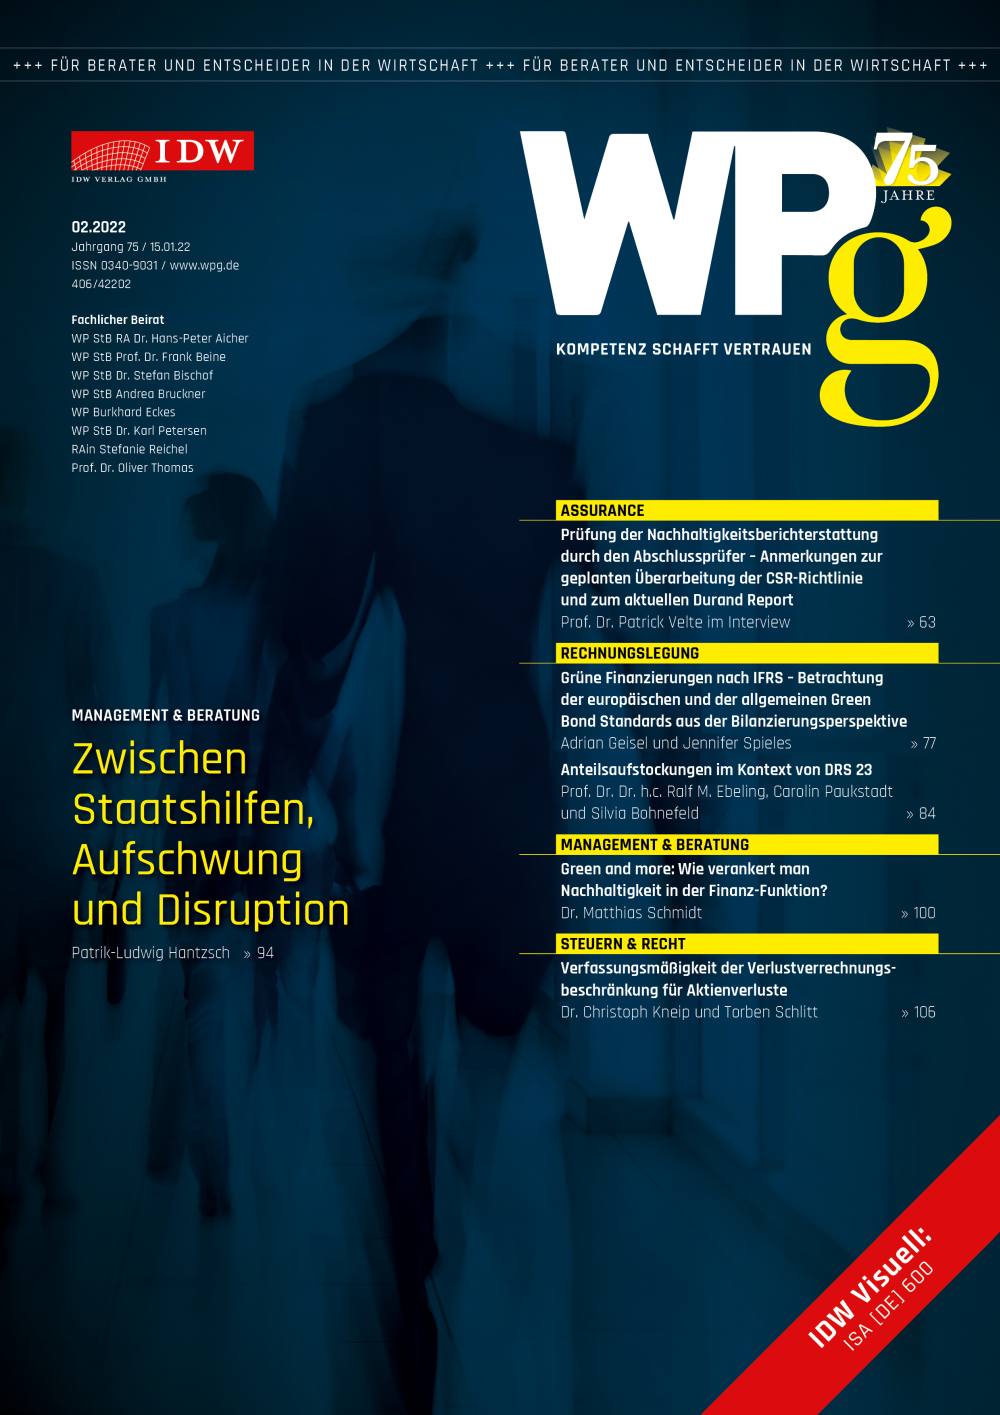 WPg - Die Wirtschaftsprüfung 2/2022